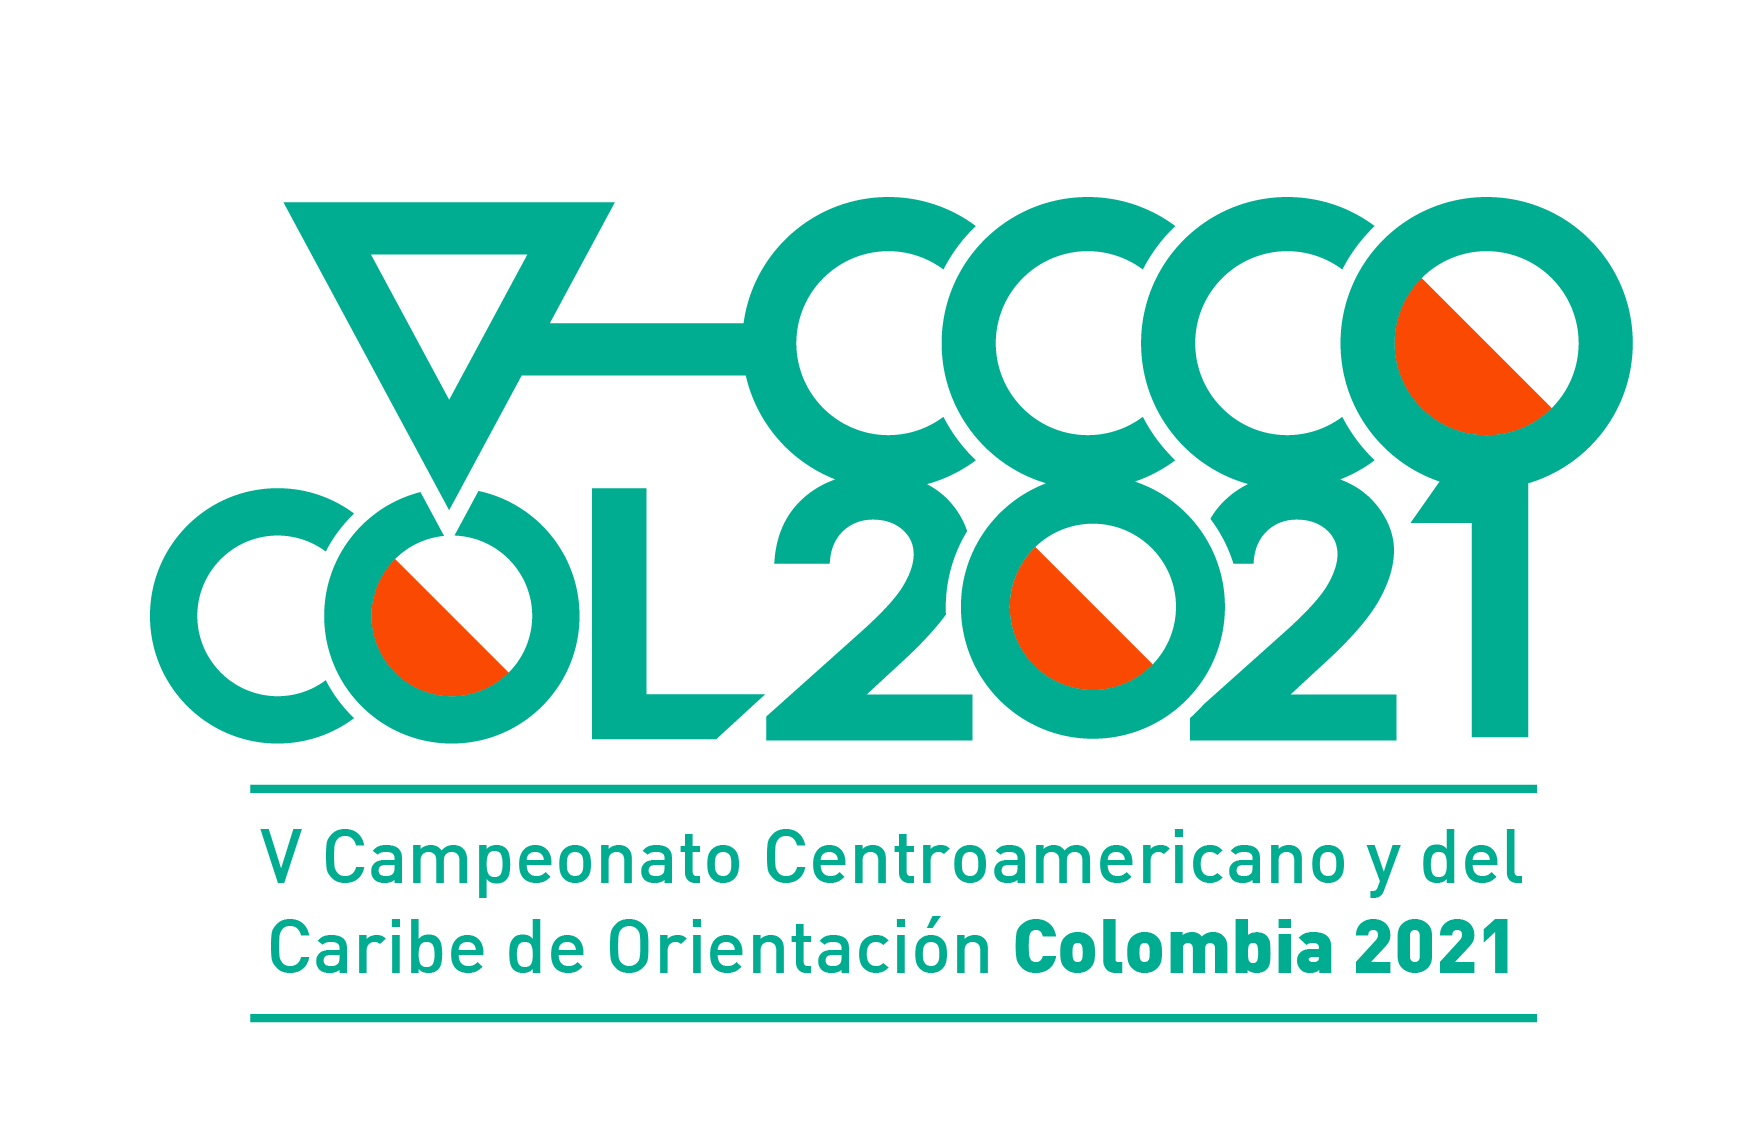 Campeonato Nacional de Orientación - Colombia 2021  |  V Centroamericano y del Caribe de Orientación